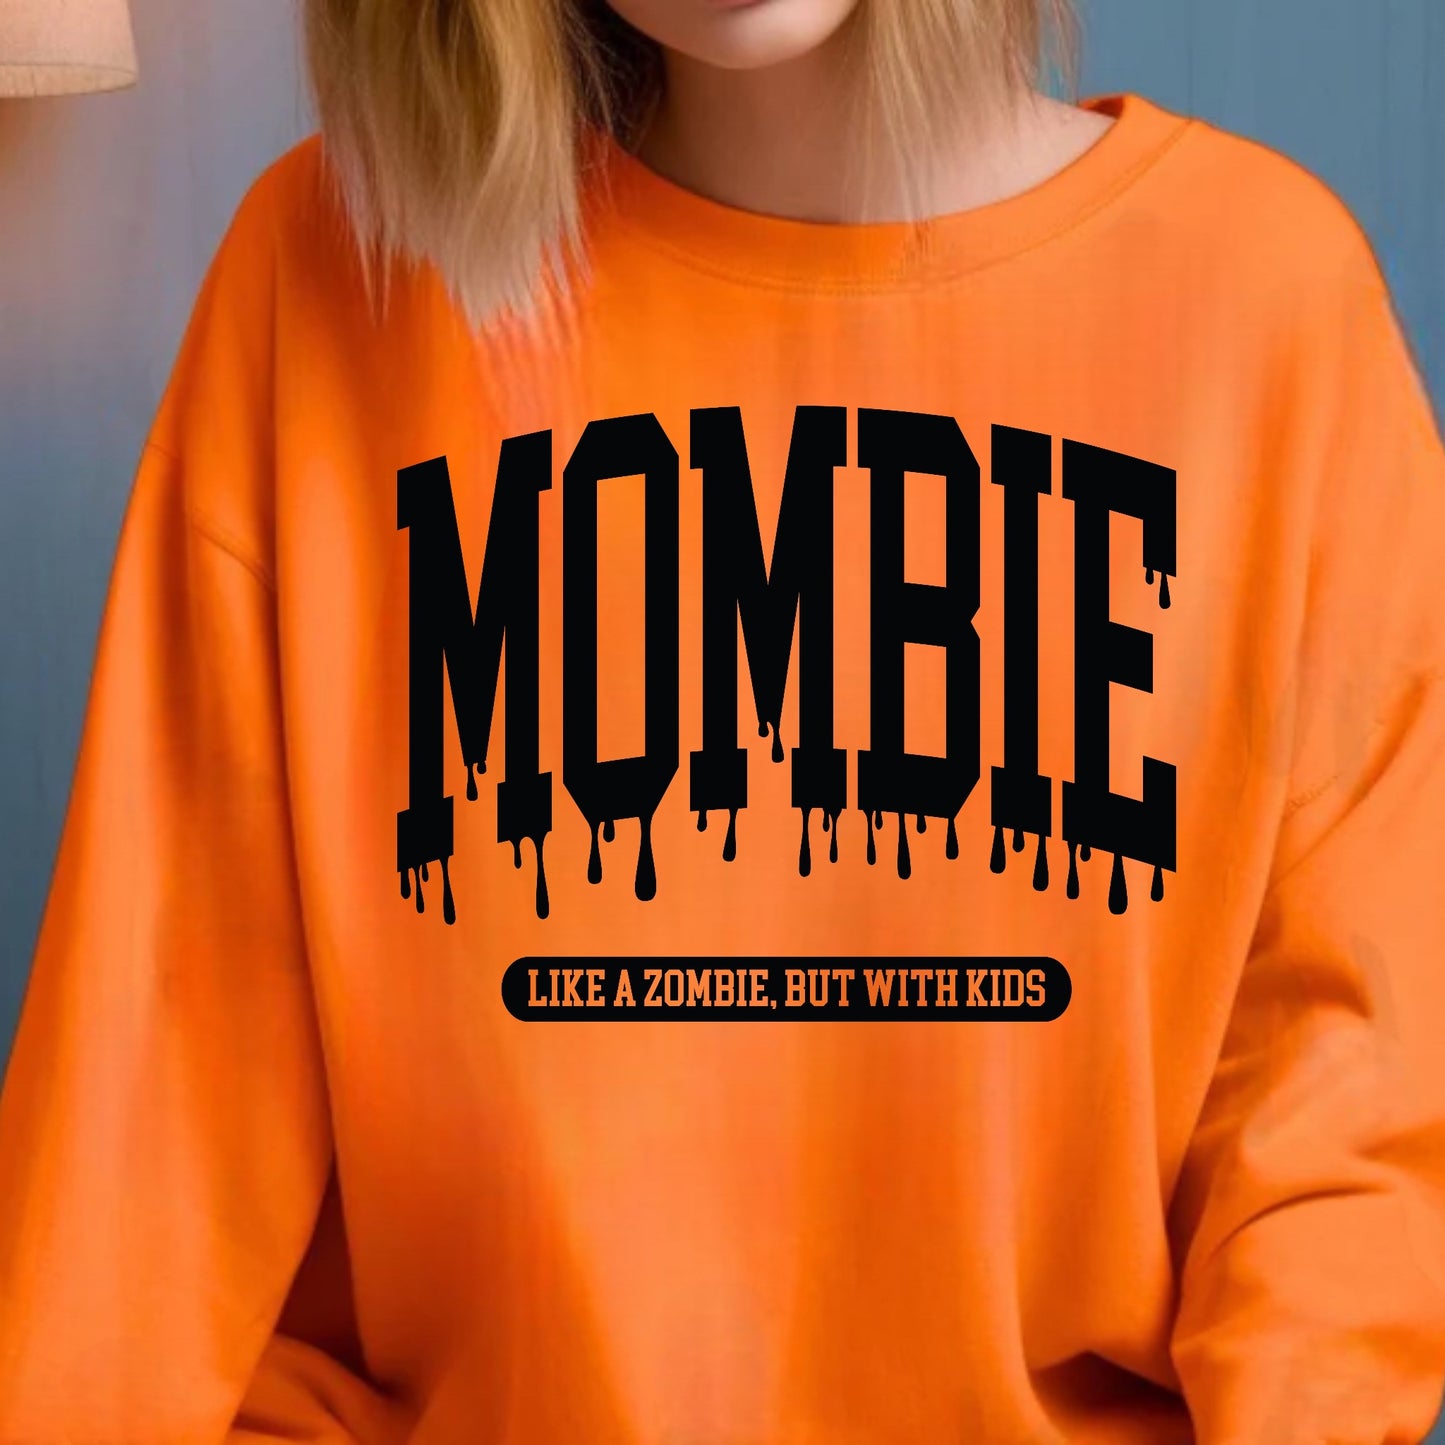 Mombie Crewneck Sweatshirt